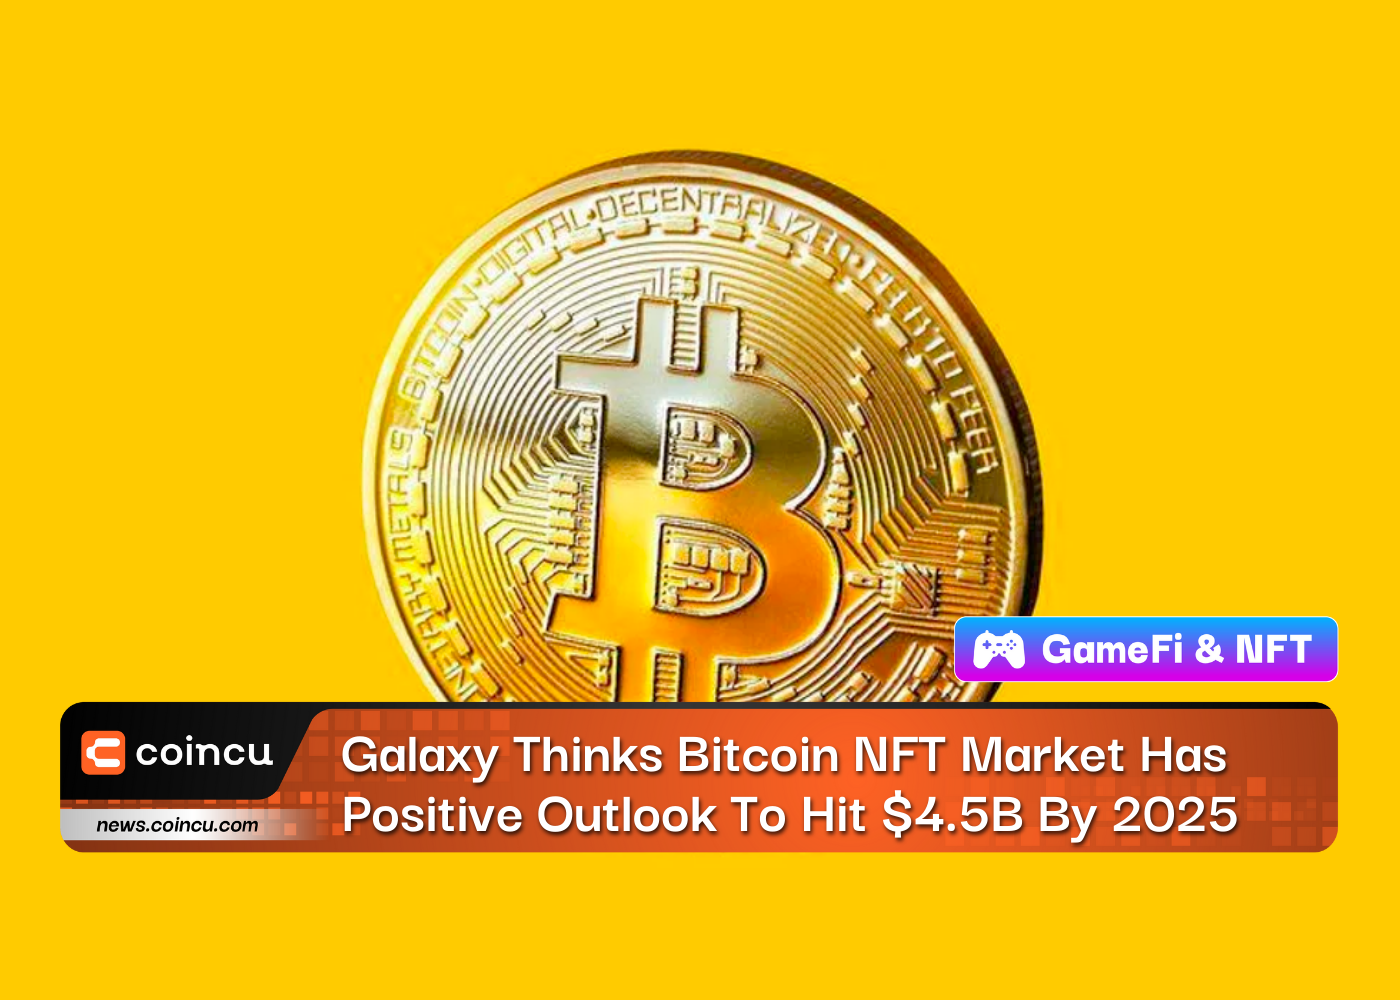 Galaxy pense que le marché Bitcoin NFT a des perspectives positives pour atteindre 4.5 milliards de dollars d'ici 2025